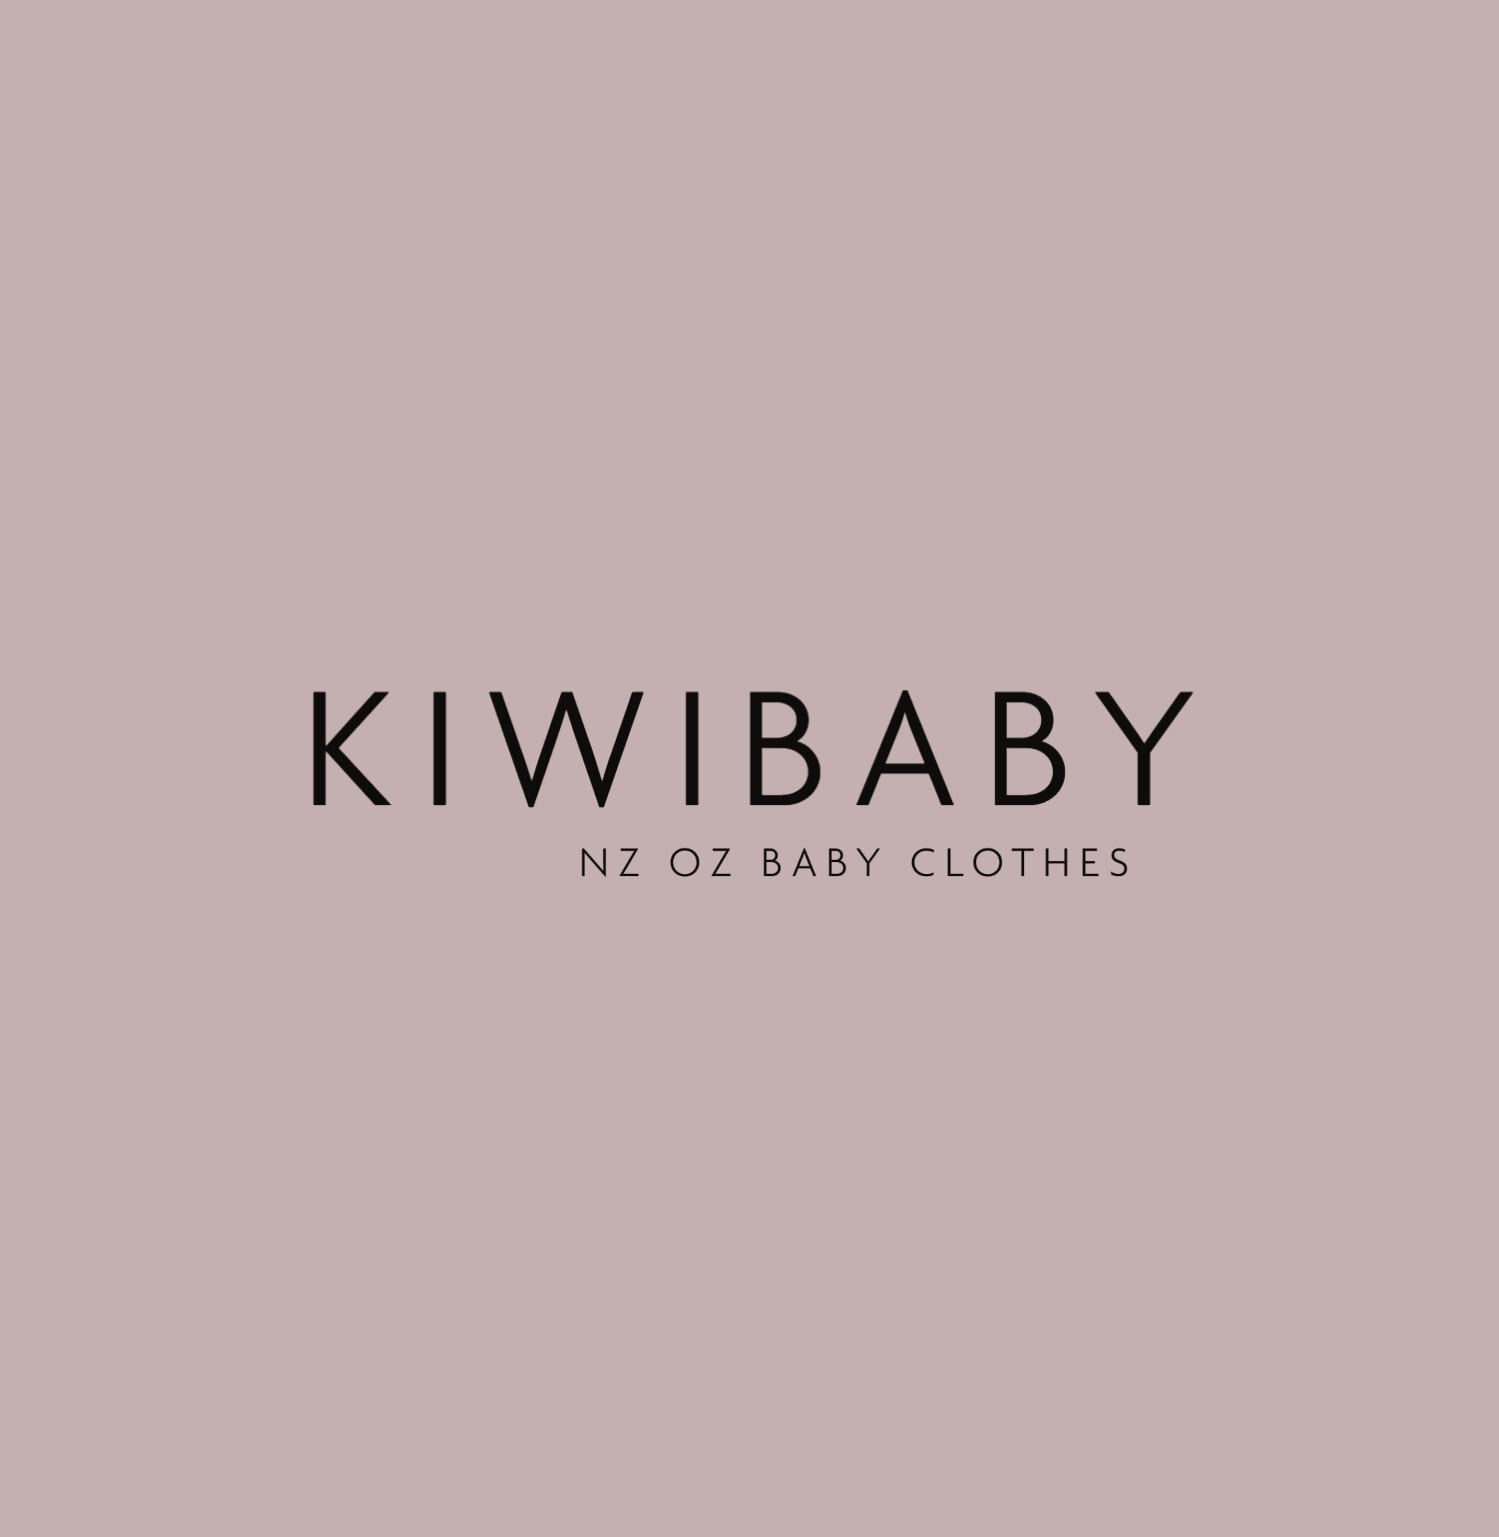 KIWIBABY